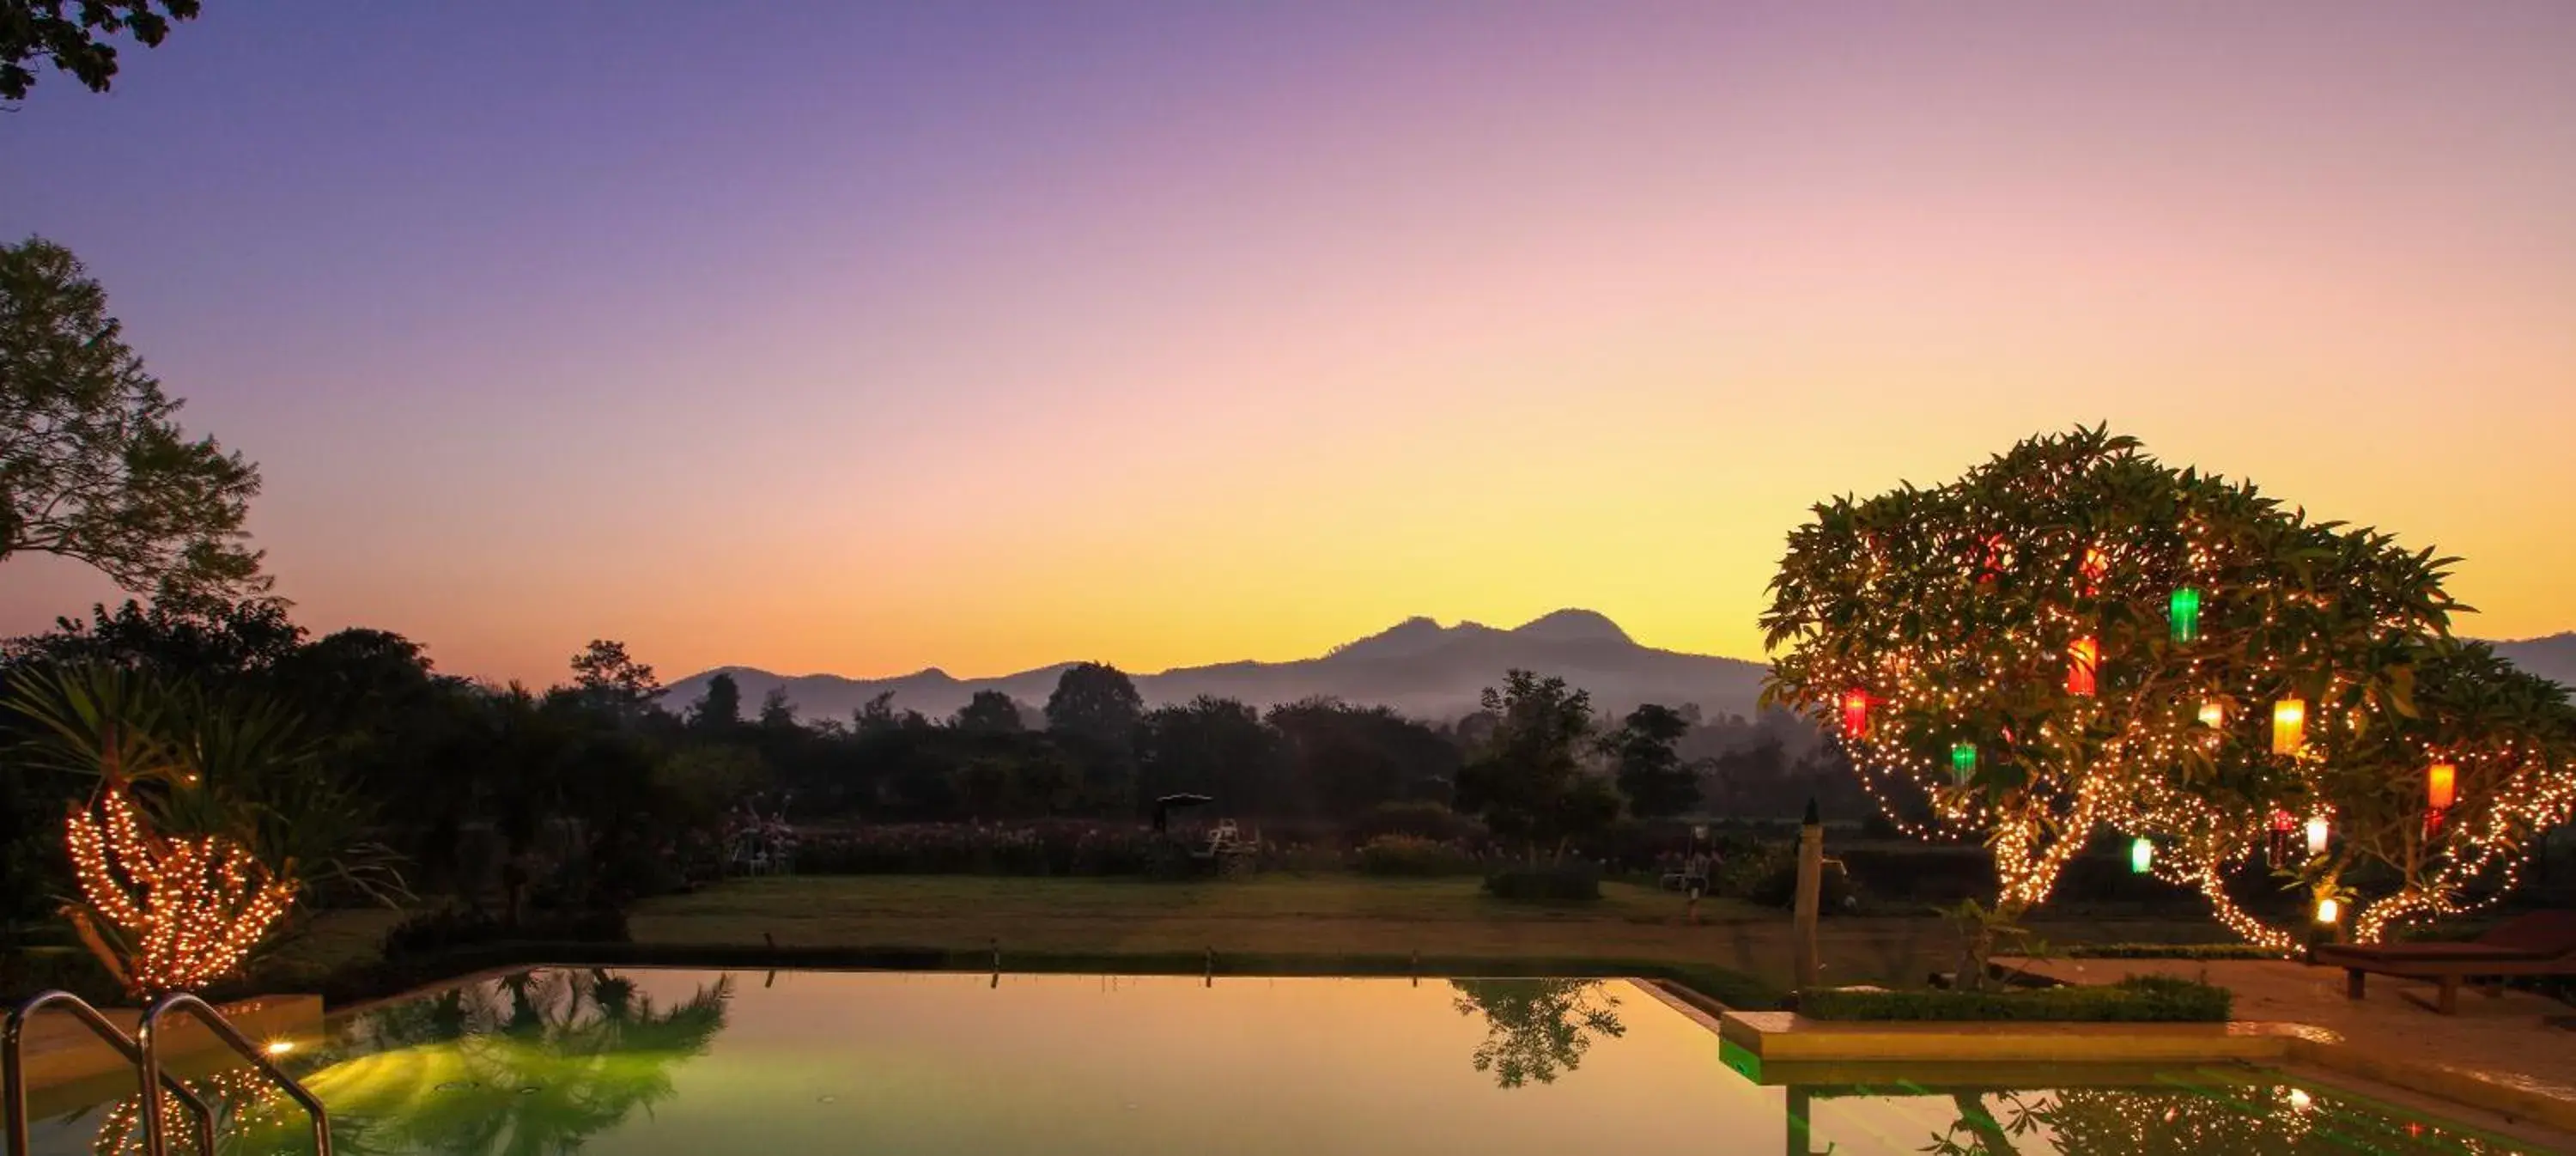 Mountain view, Sunrise/Sunset in Belle Villa Resort, Pai